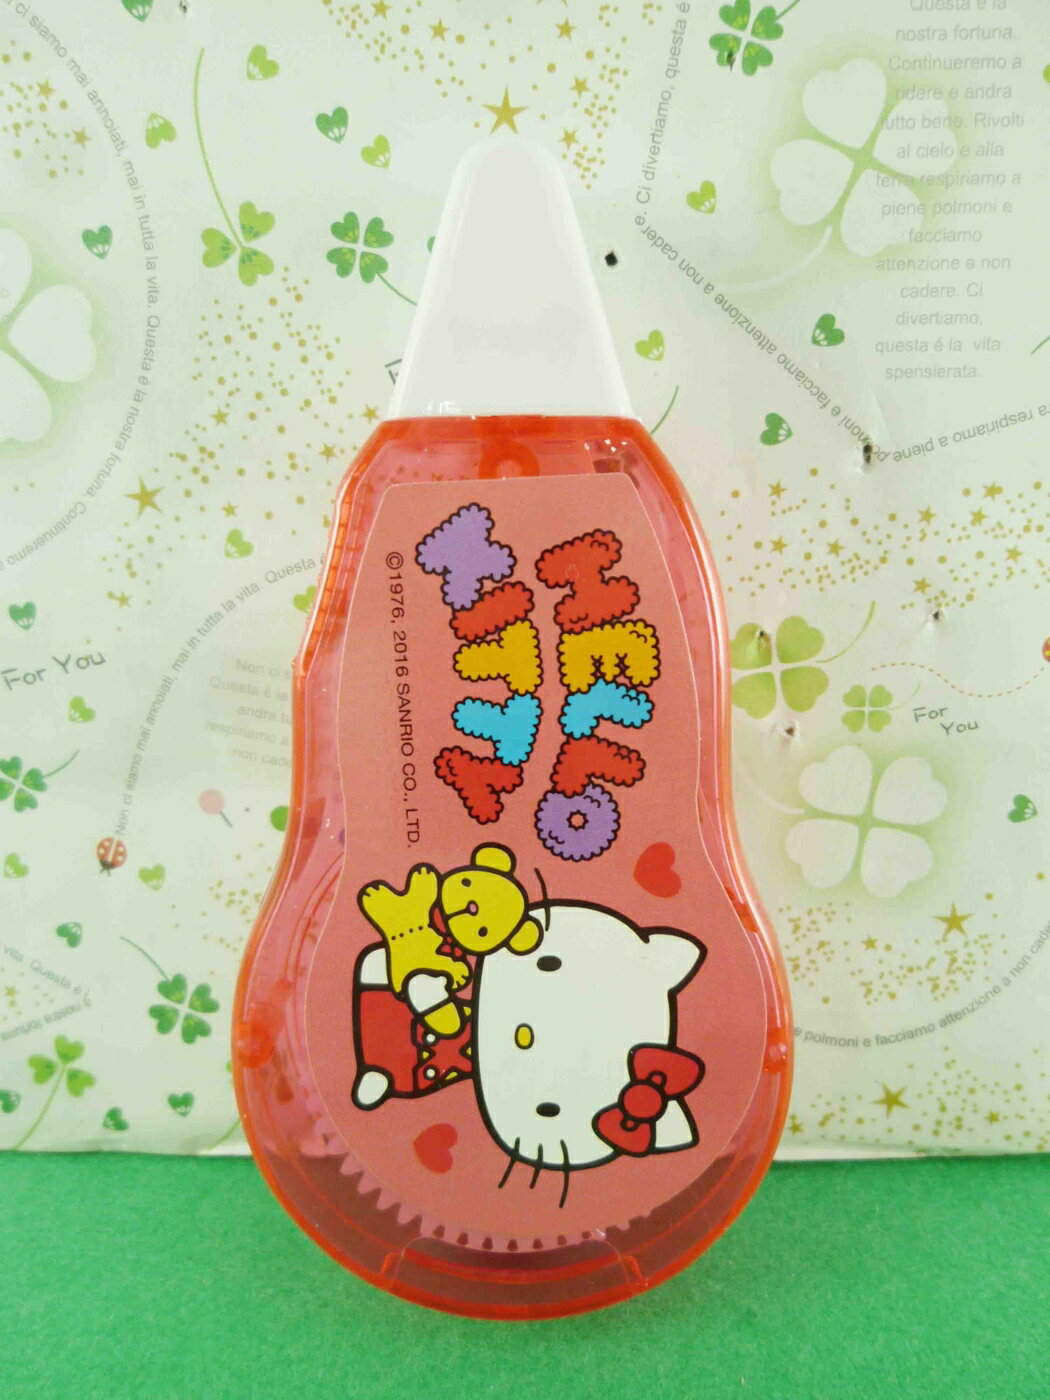 【震撼精品百貨】Hello Kitty 凱蒂貓 超大立可帶-紅色 震撼日式精品百貨